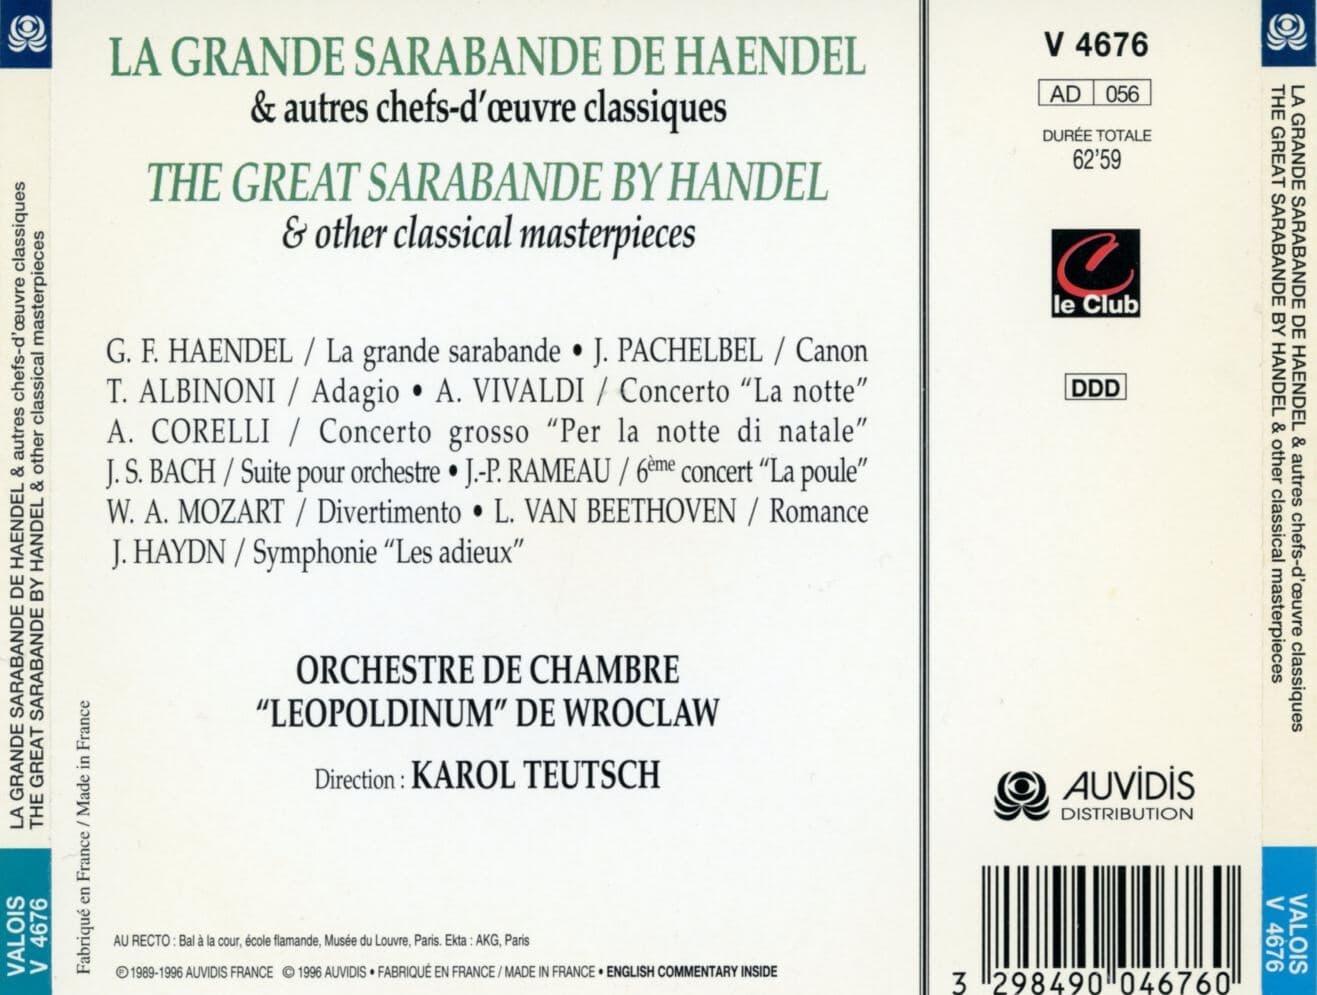 카를 토이추 - Karol Teutsch - The Great Sarabande By Handel (헨델 사랑방드) [프랑스발매]